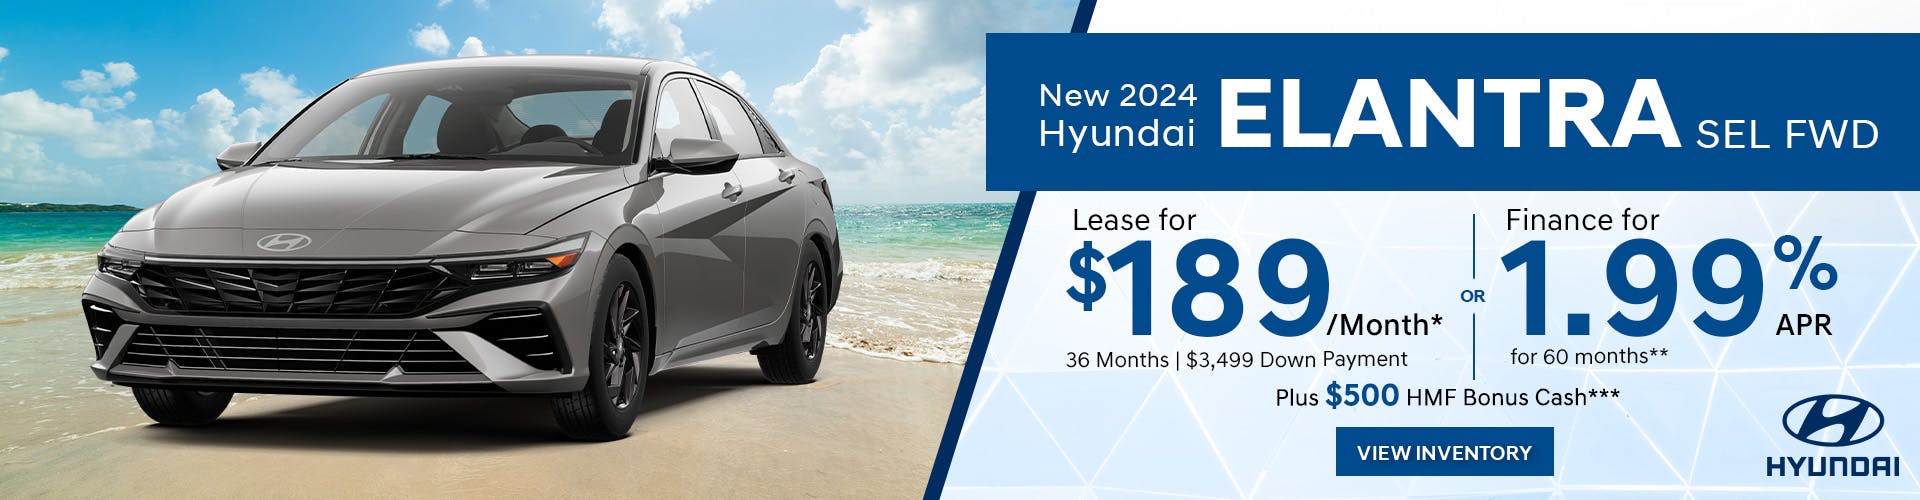 New 2024 Hyundai Elantra SEL FWD